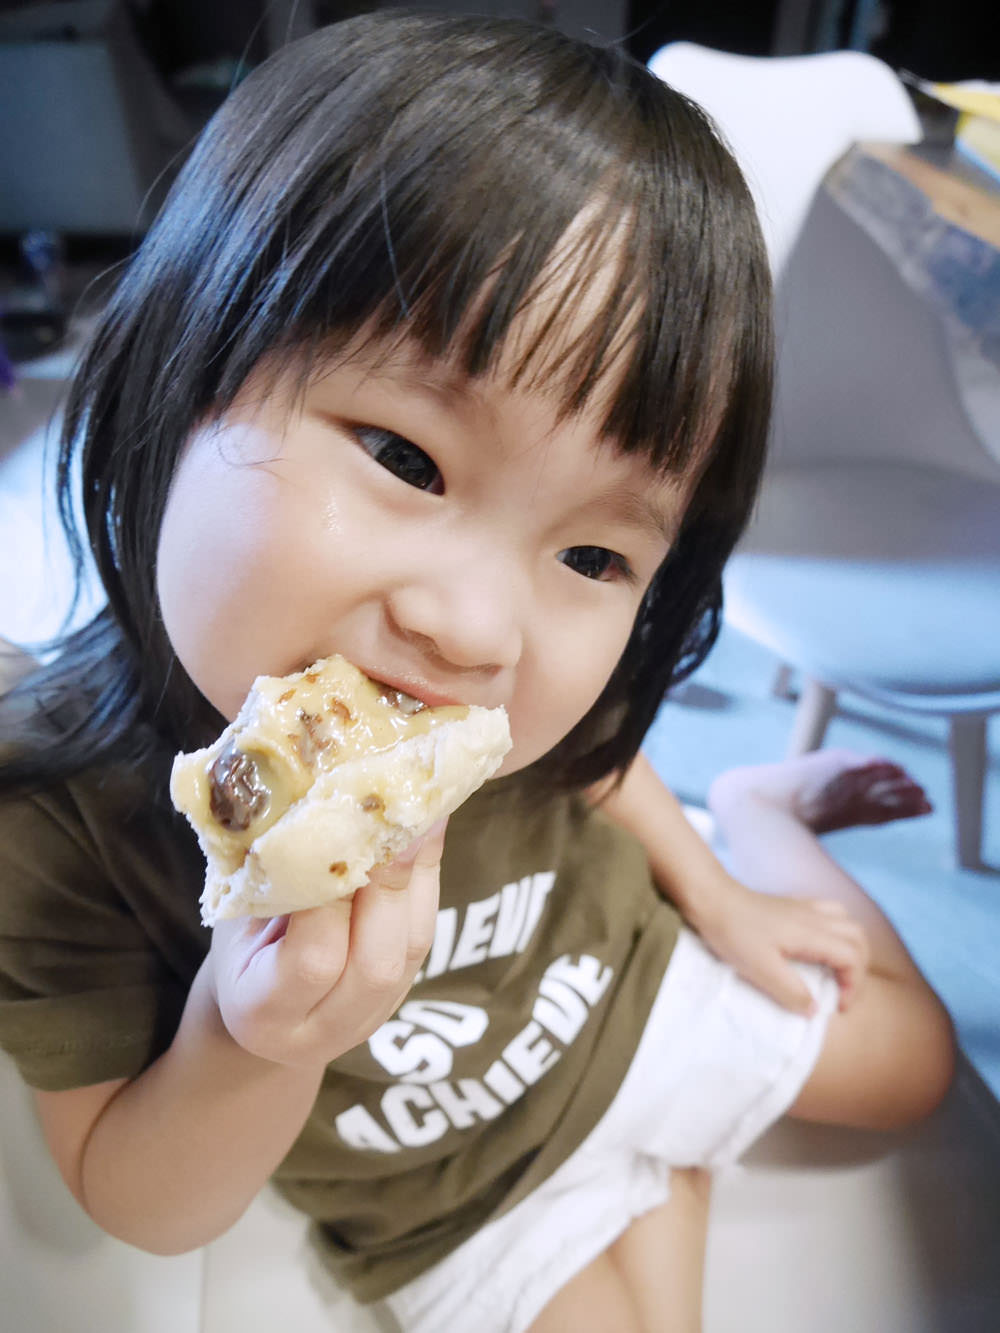 [啾團] 日本嚴選食品團!健康又好吃,不會煮飯也能做出健康好料理-信州須藤農園果醬/日本LEGUMES DE YOTEI北海道鬆餅粉